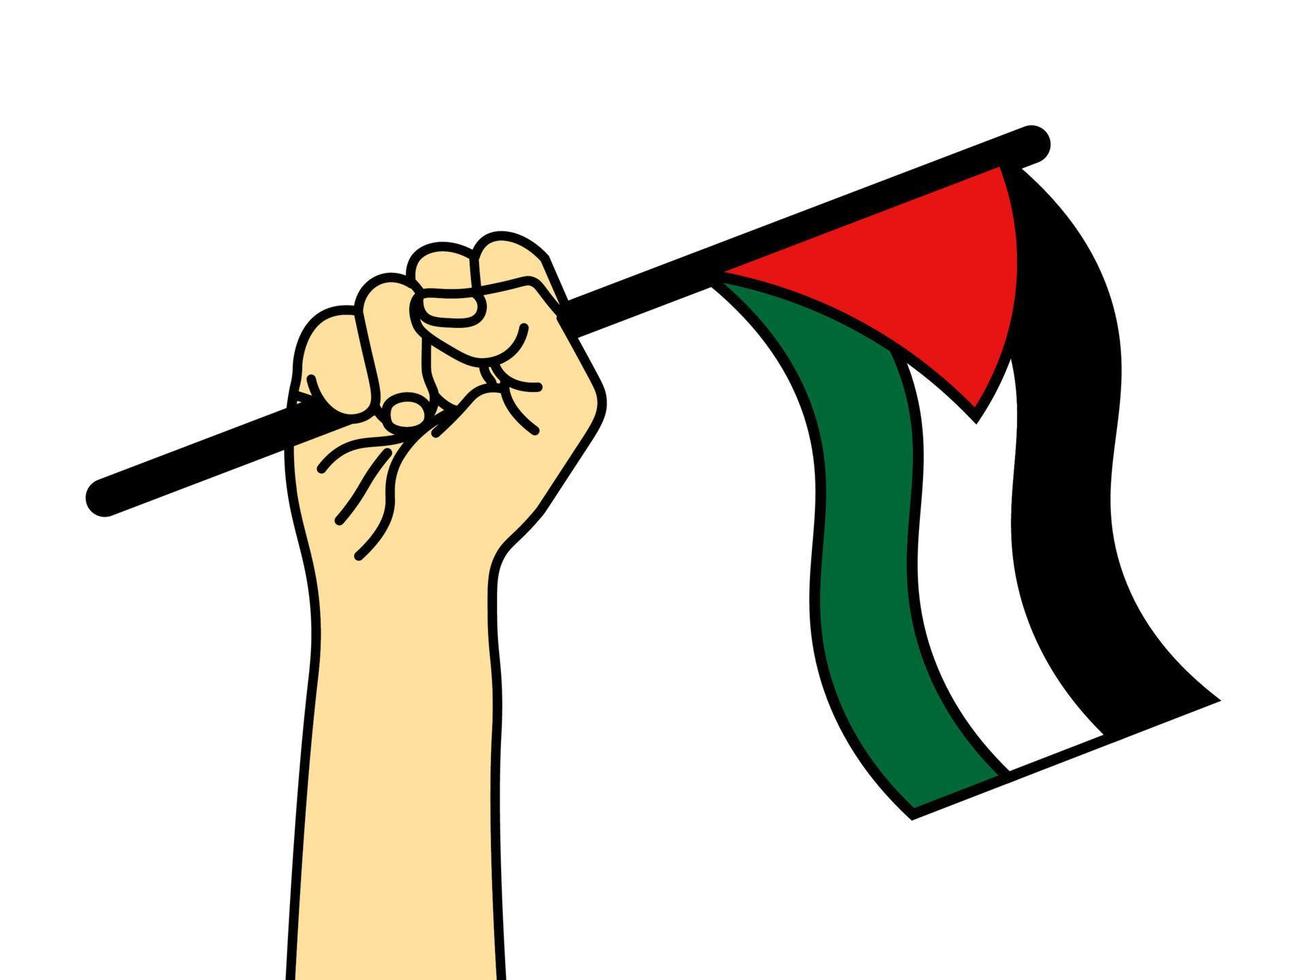 tenere in mano la bandiera palestinese che esprime solidarietà, concetto di palestina libera. illustrazione vettoriale